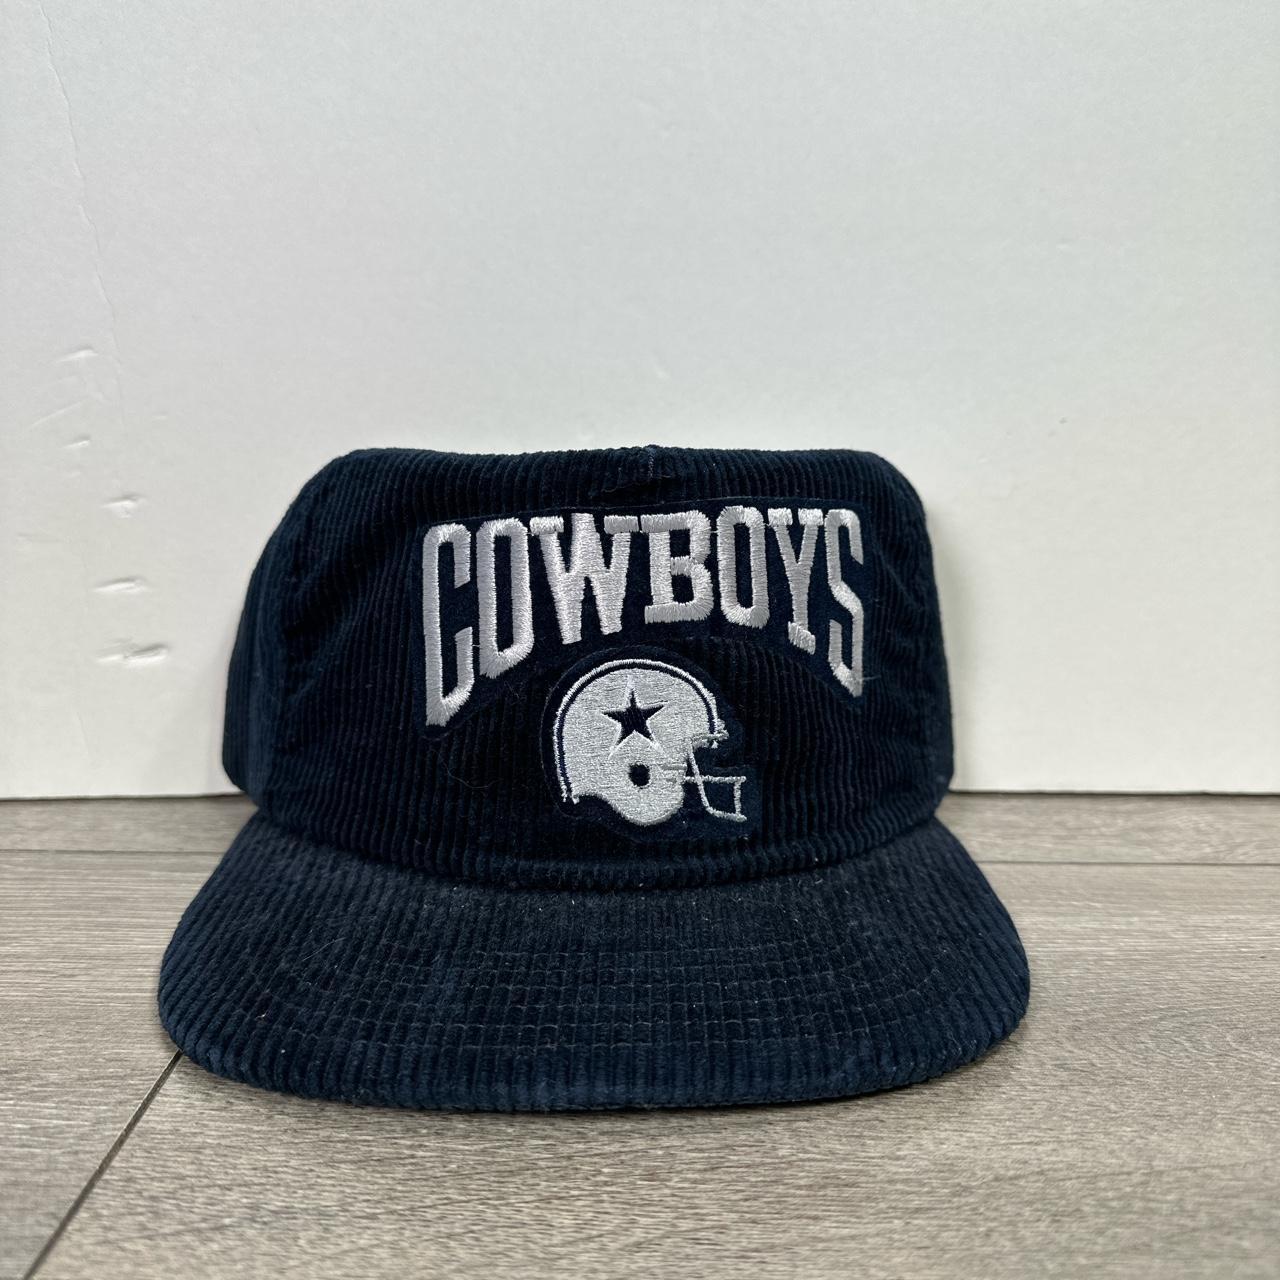 corduroy dallas cowboys hat